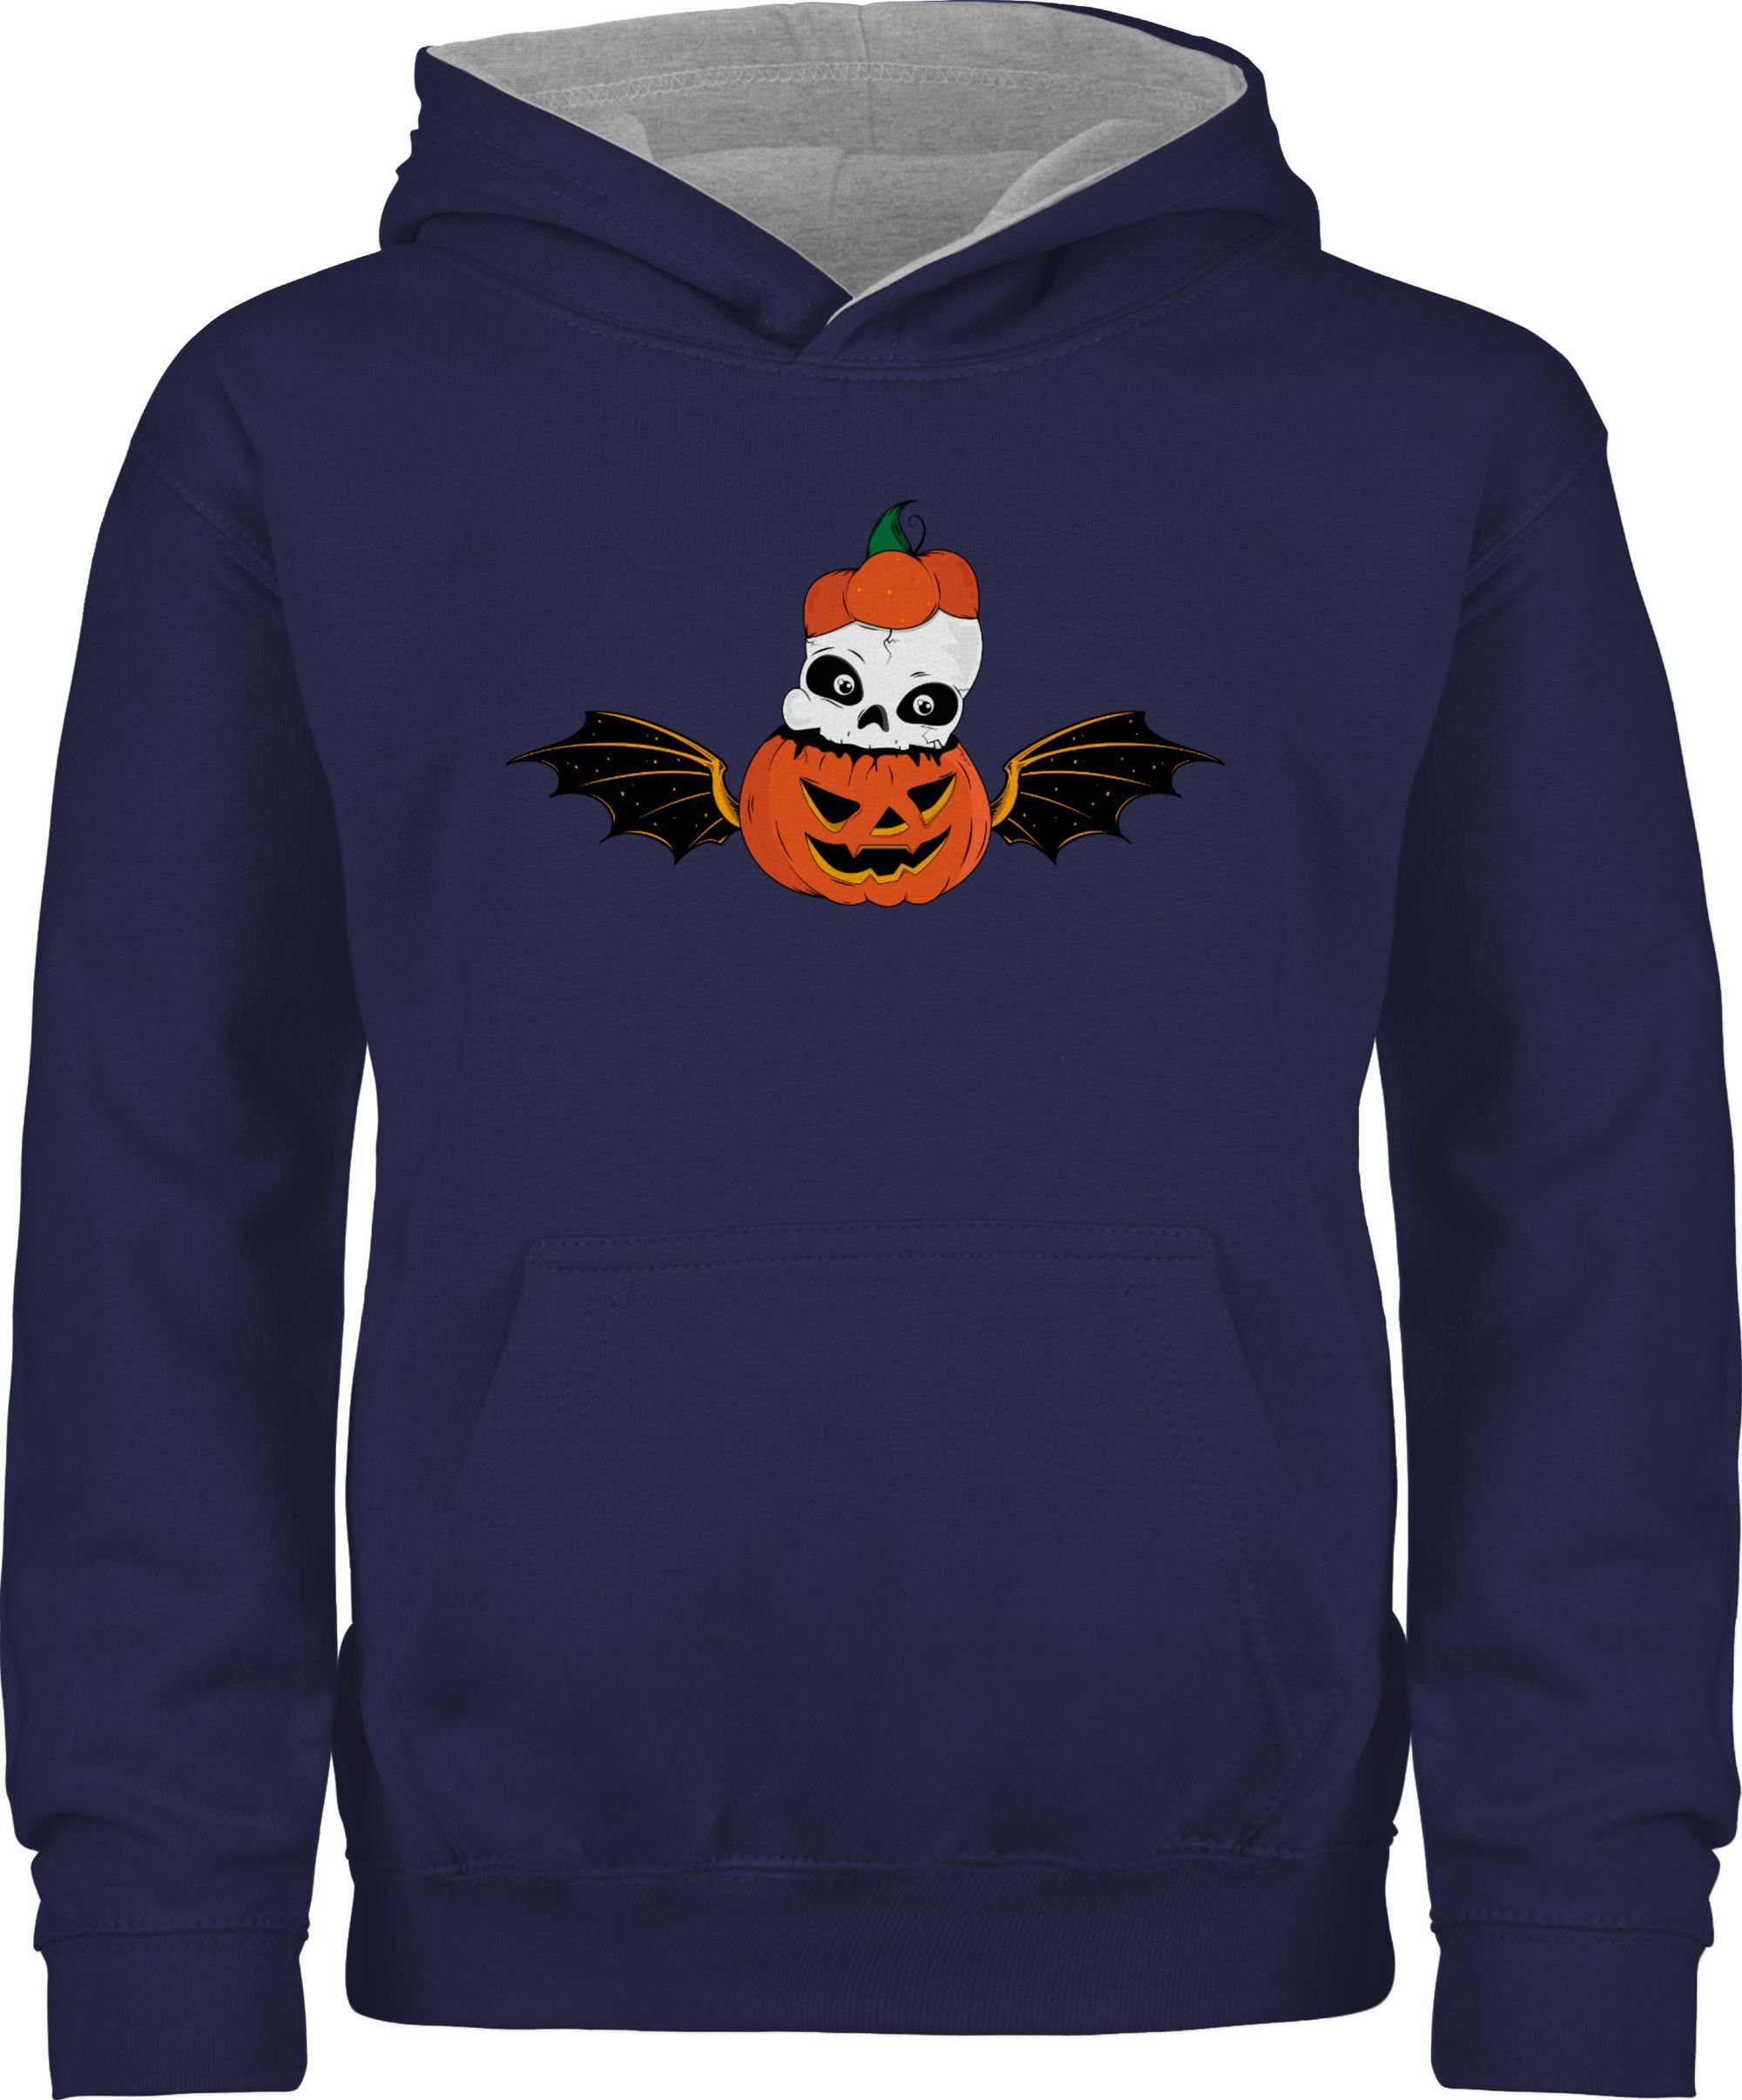 Halloween Kürbis Kostüme 1 Navy Shirtracer Hoodie meliert Blau/Grau Fledermaus für Skelett Totenkopf Kinder Kürbisgesicht